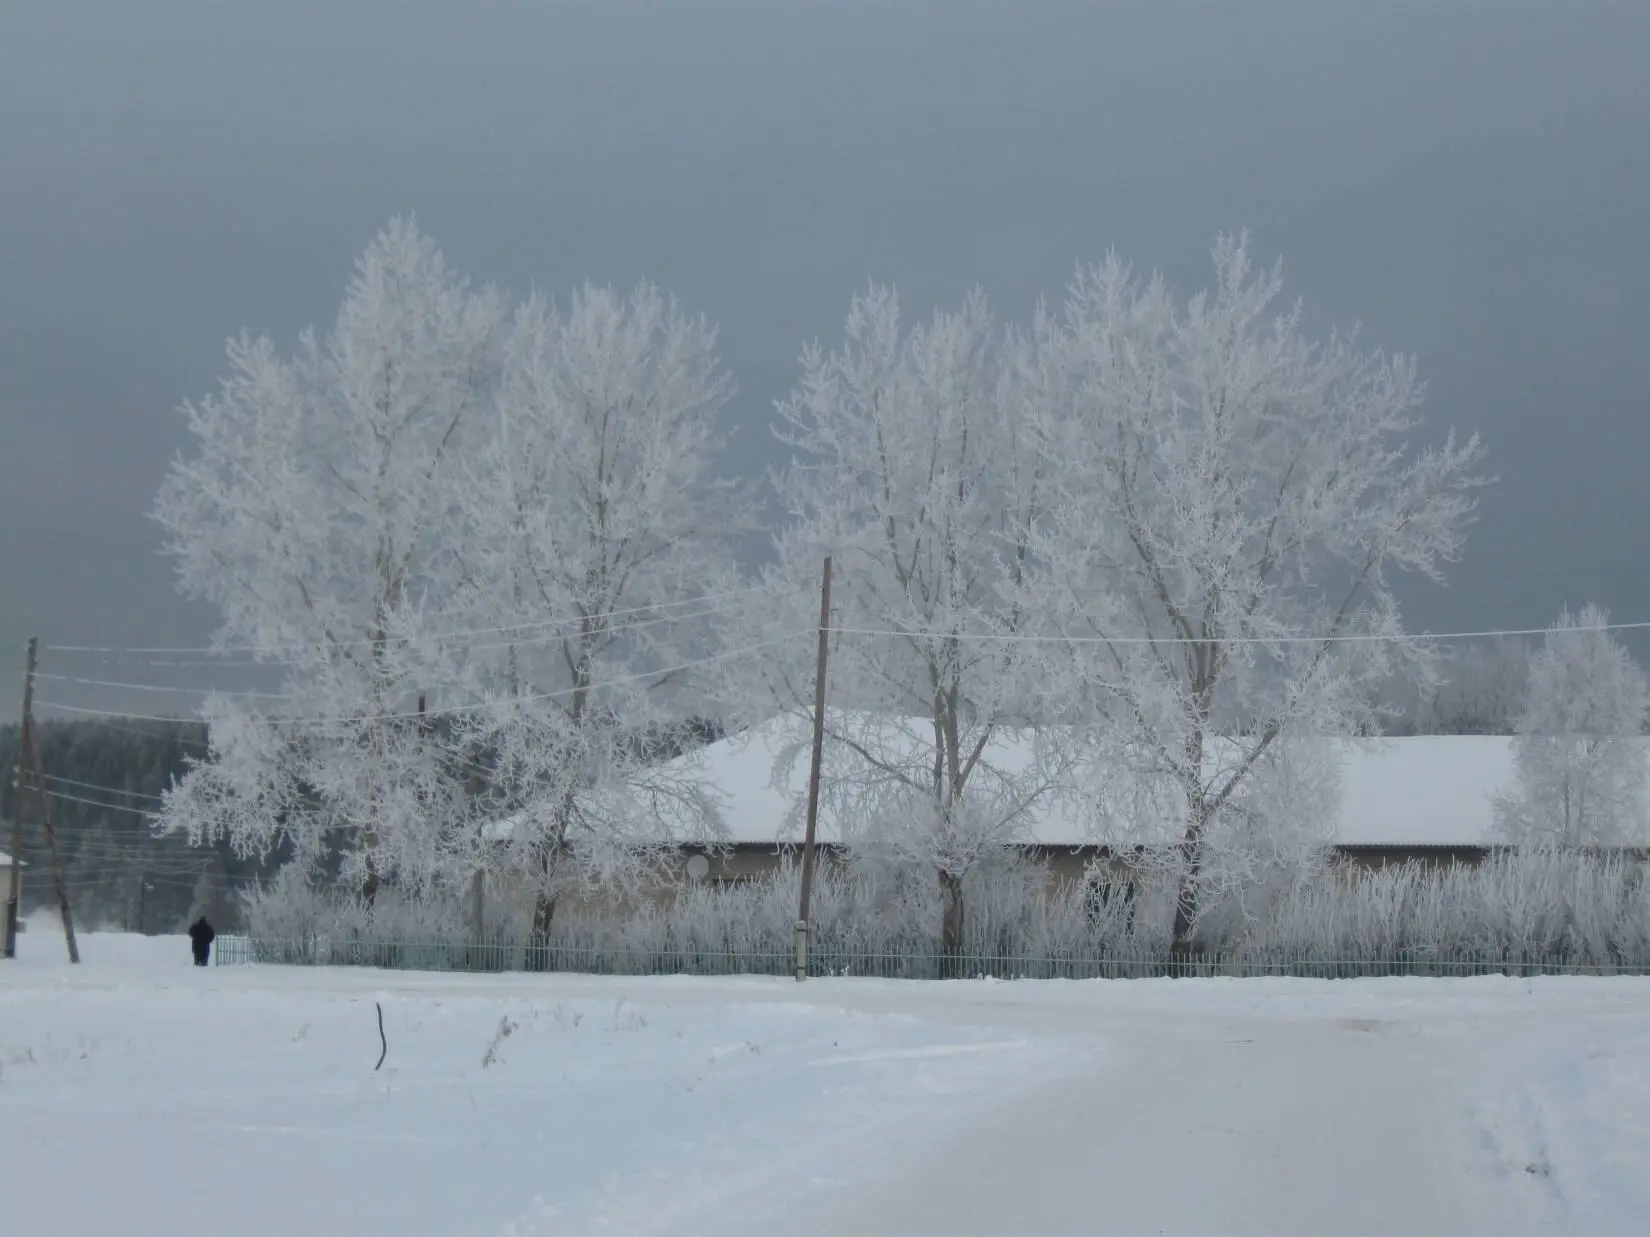 В поле Тишина и в поле Шум услышишь вряд ли Ветер со снегом споря Стог - фото 2